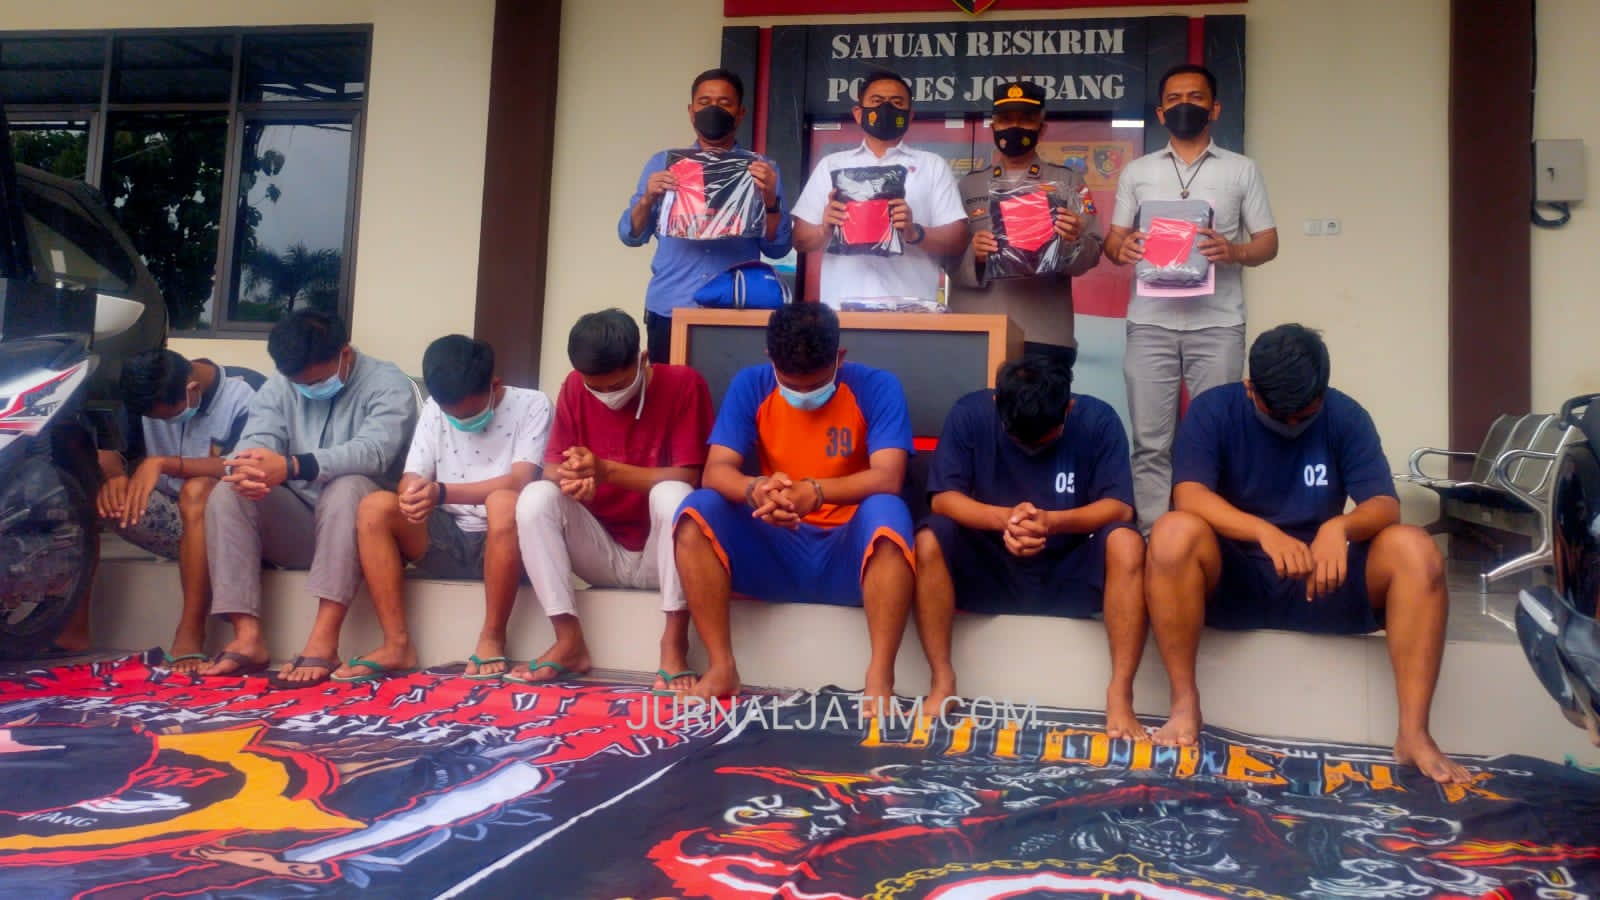 Sok Jagoan Pukuli Orang, 7 Pesilat Tertunduk Lesu saat di Polres Jombang